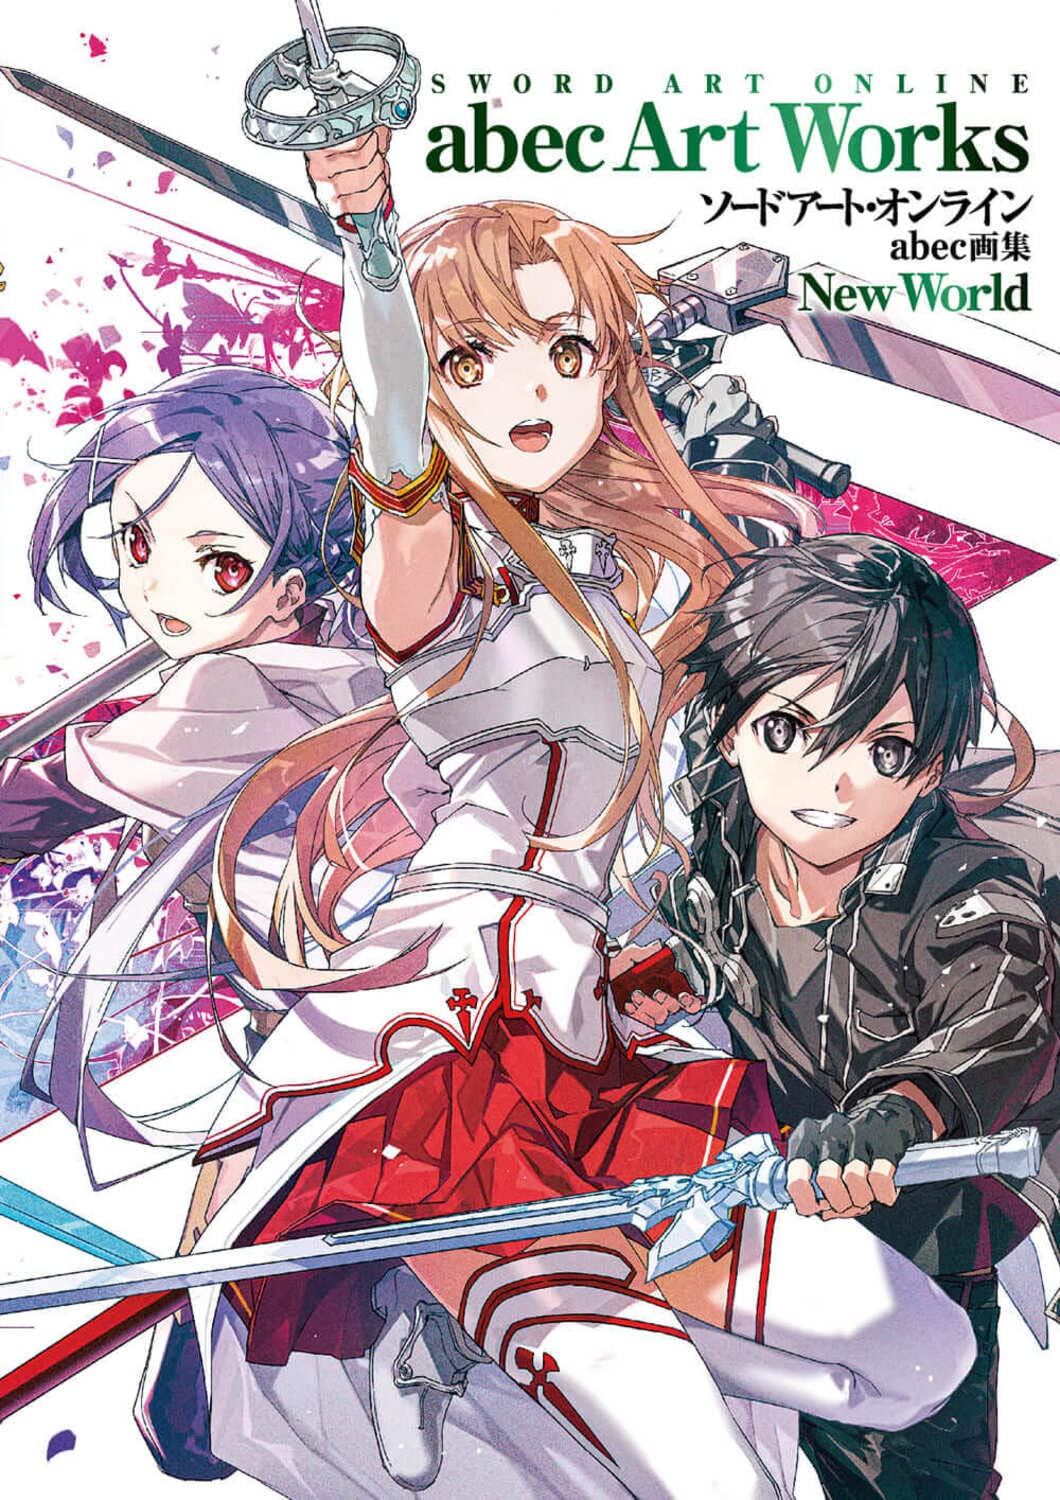 Light Novel Review: Sword Art Online – Progressive [Volume 1]